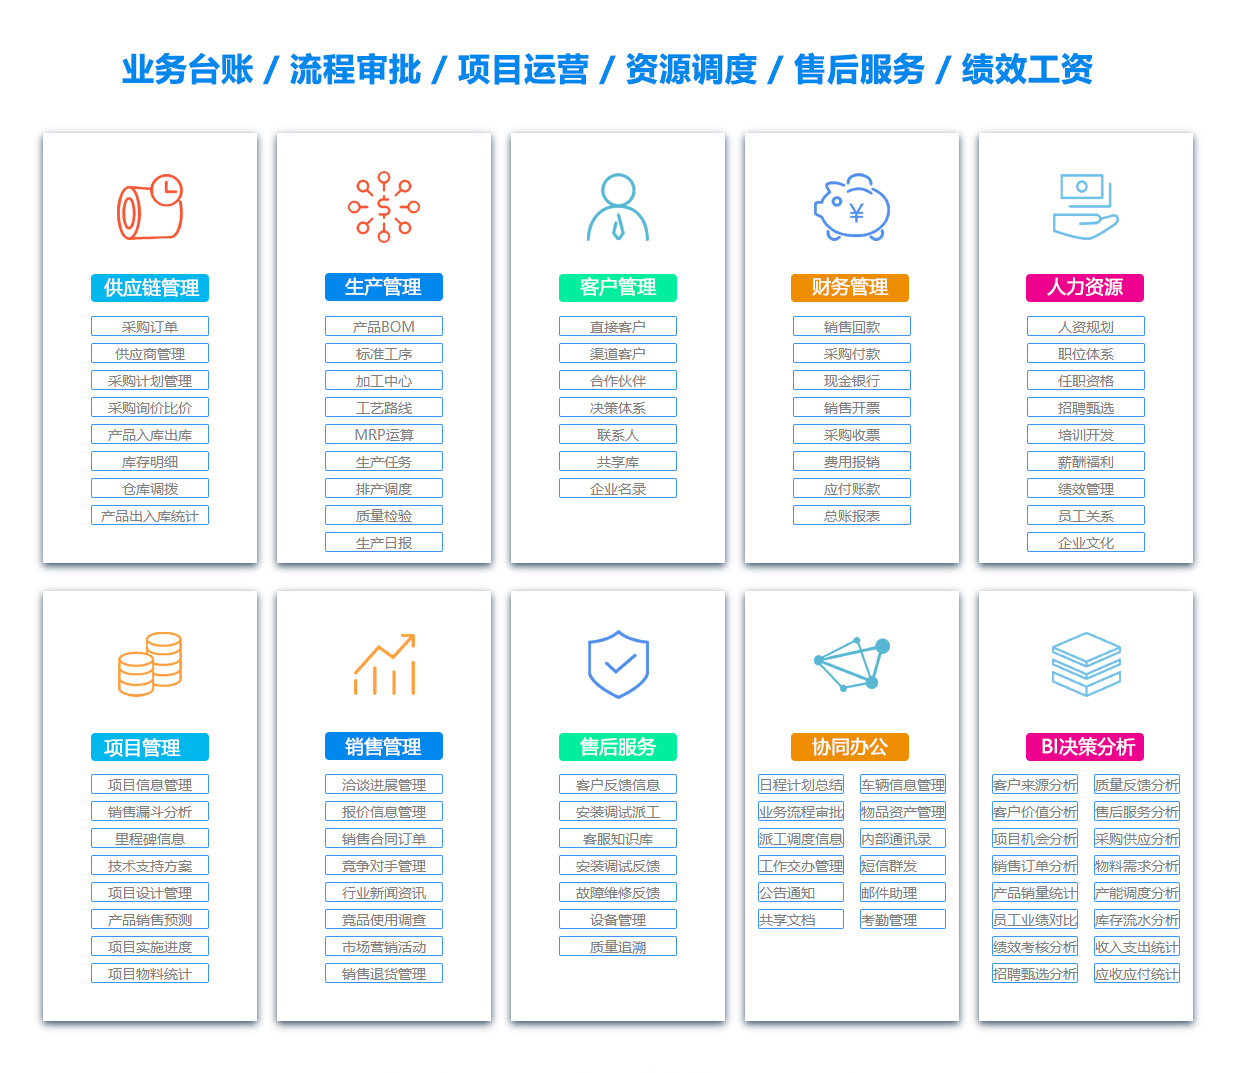 台州BOM:物料清单软件